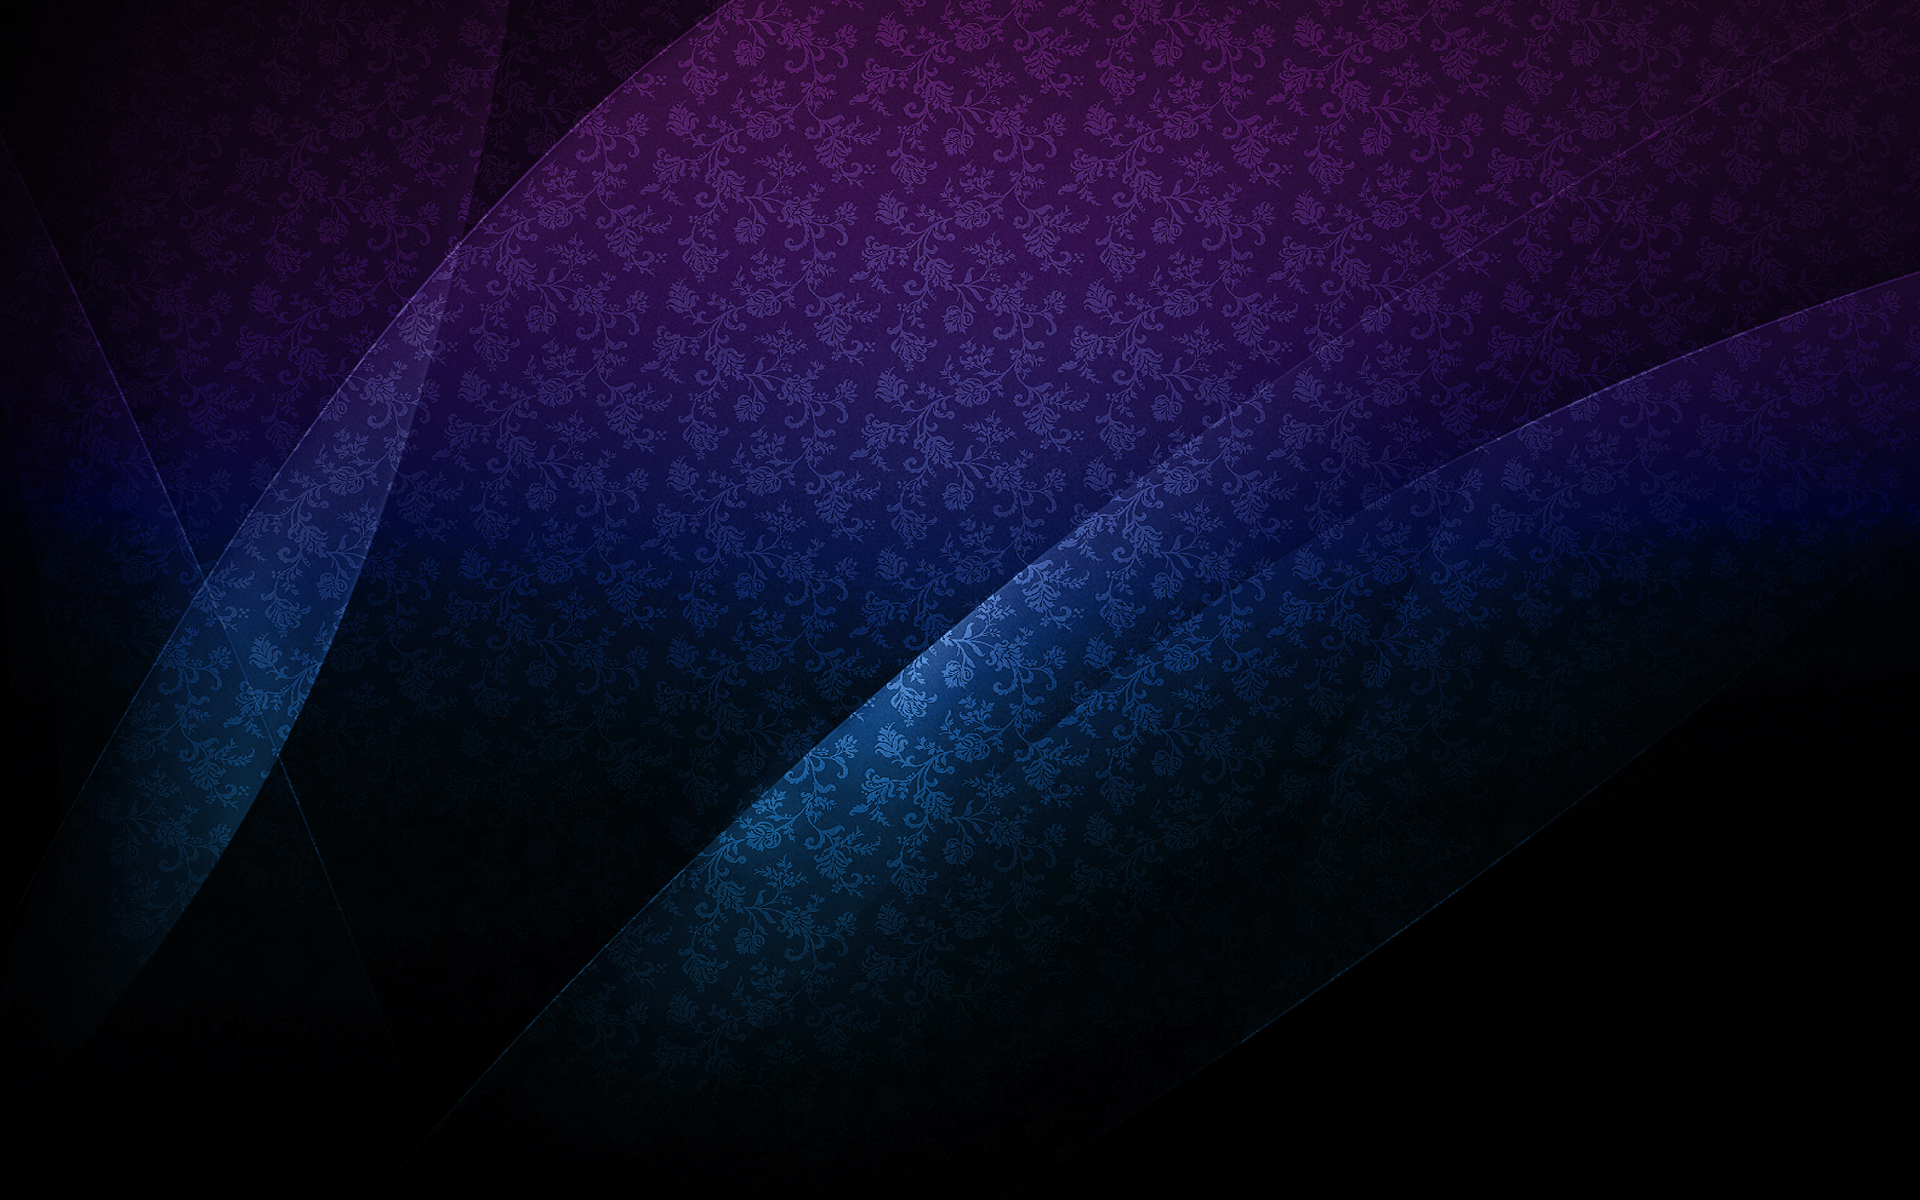 Hd Blue And Purple Wallpaper Pixelstalknet